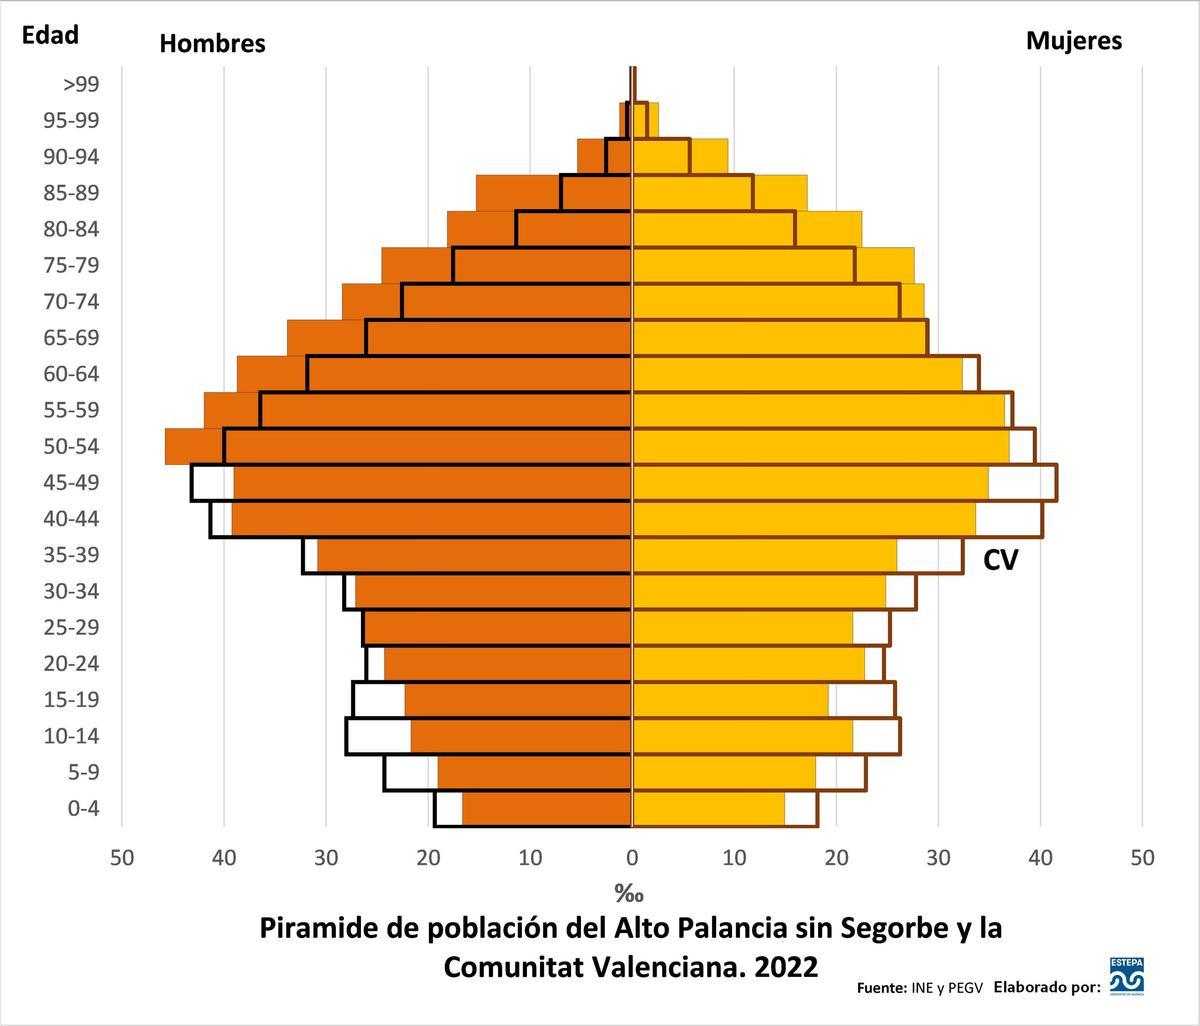 Pirámide de población del Alto Palancia sin Segorbe y la Comunitat Valenciana. Año 2022.